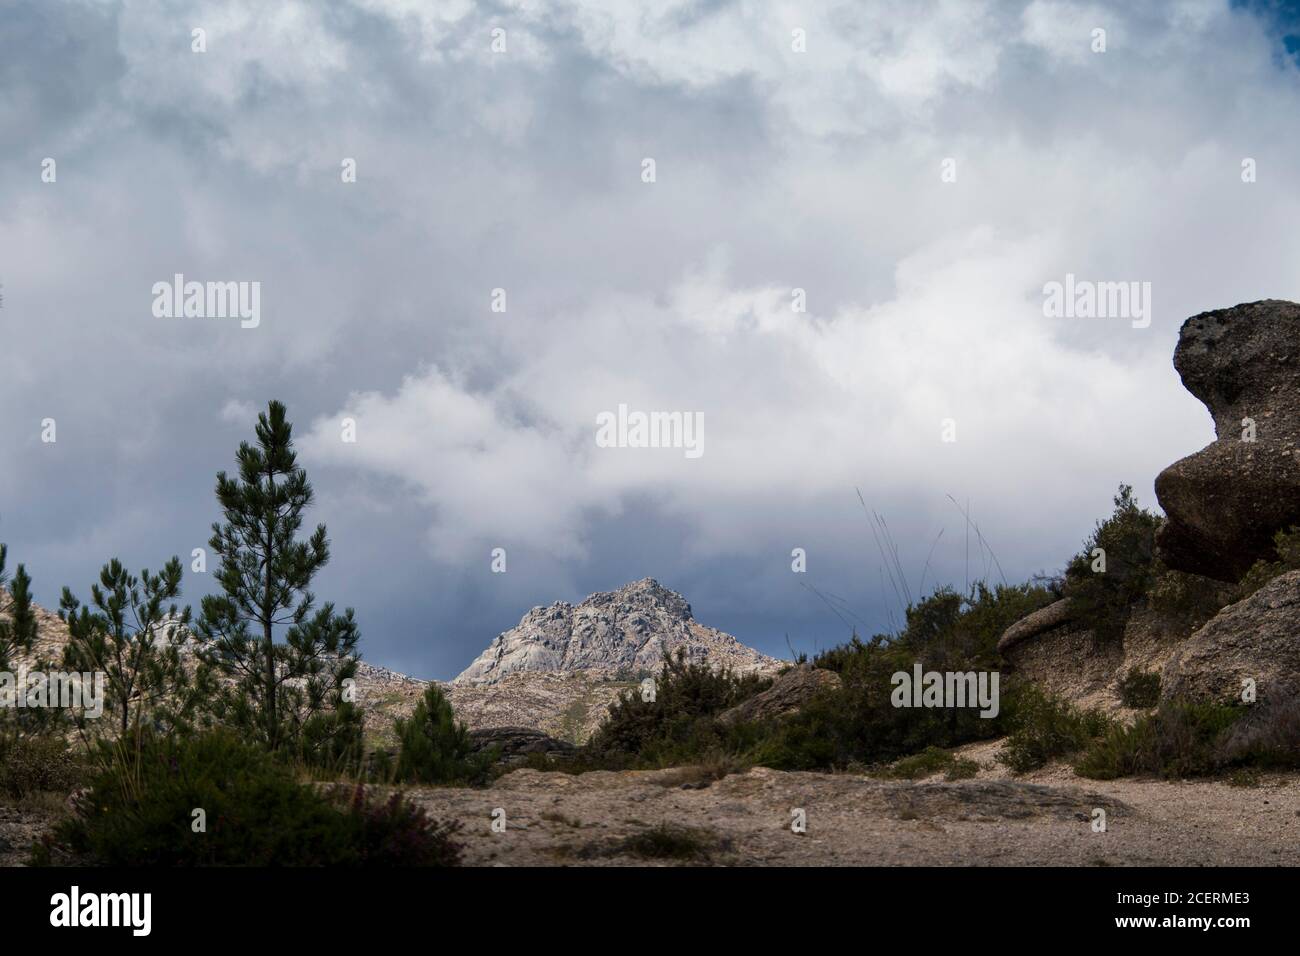 Berggipfel zeigt in der Ferne, hinter einem Pfad und mehr Berge und Täler,  von einem bewölkten Himmel beschattet Stockfotografie - Alamy